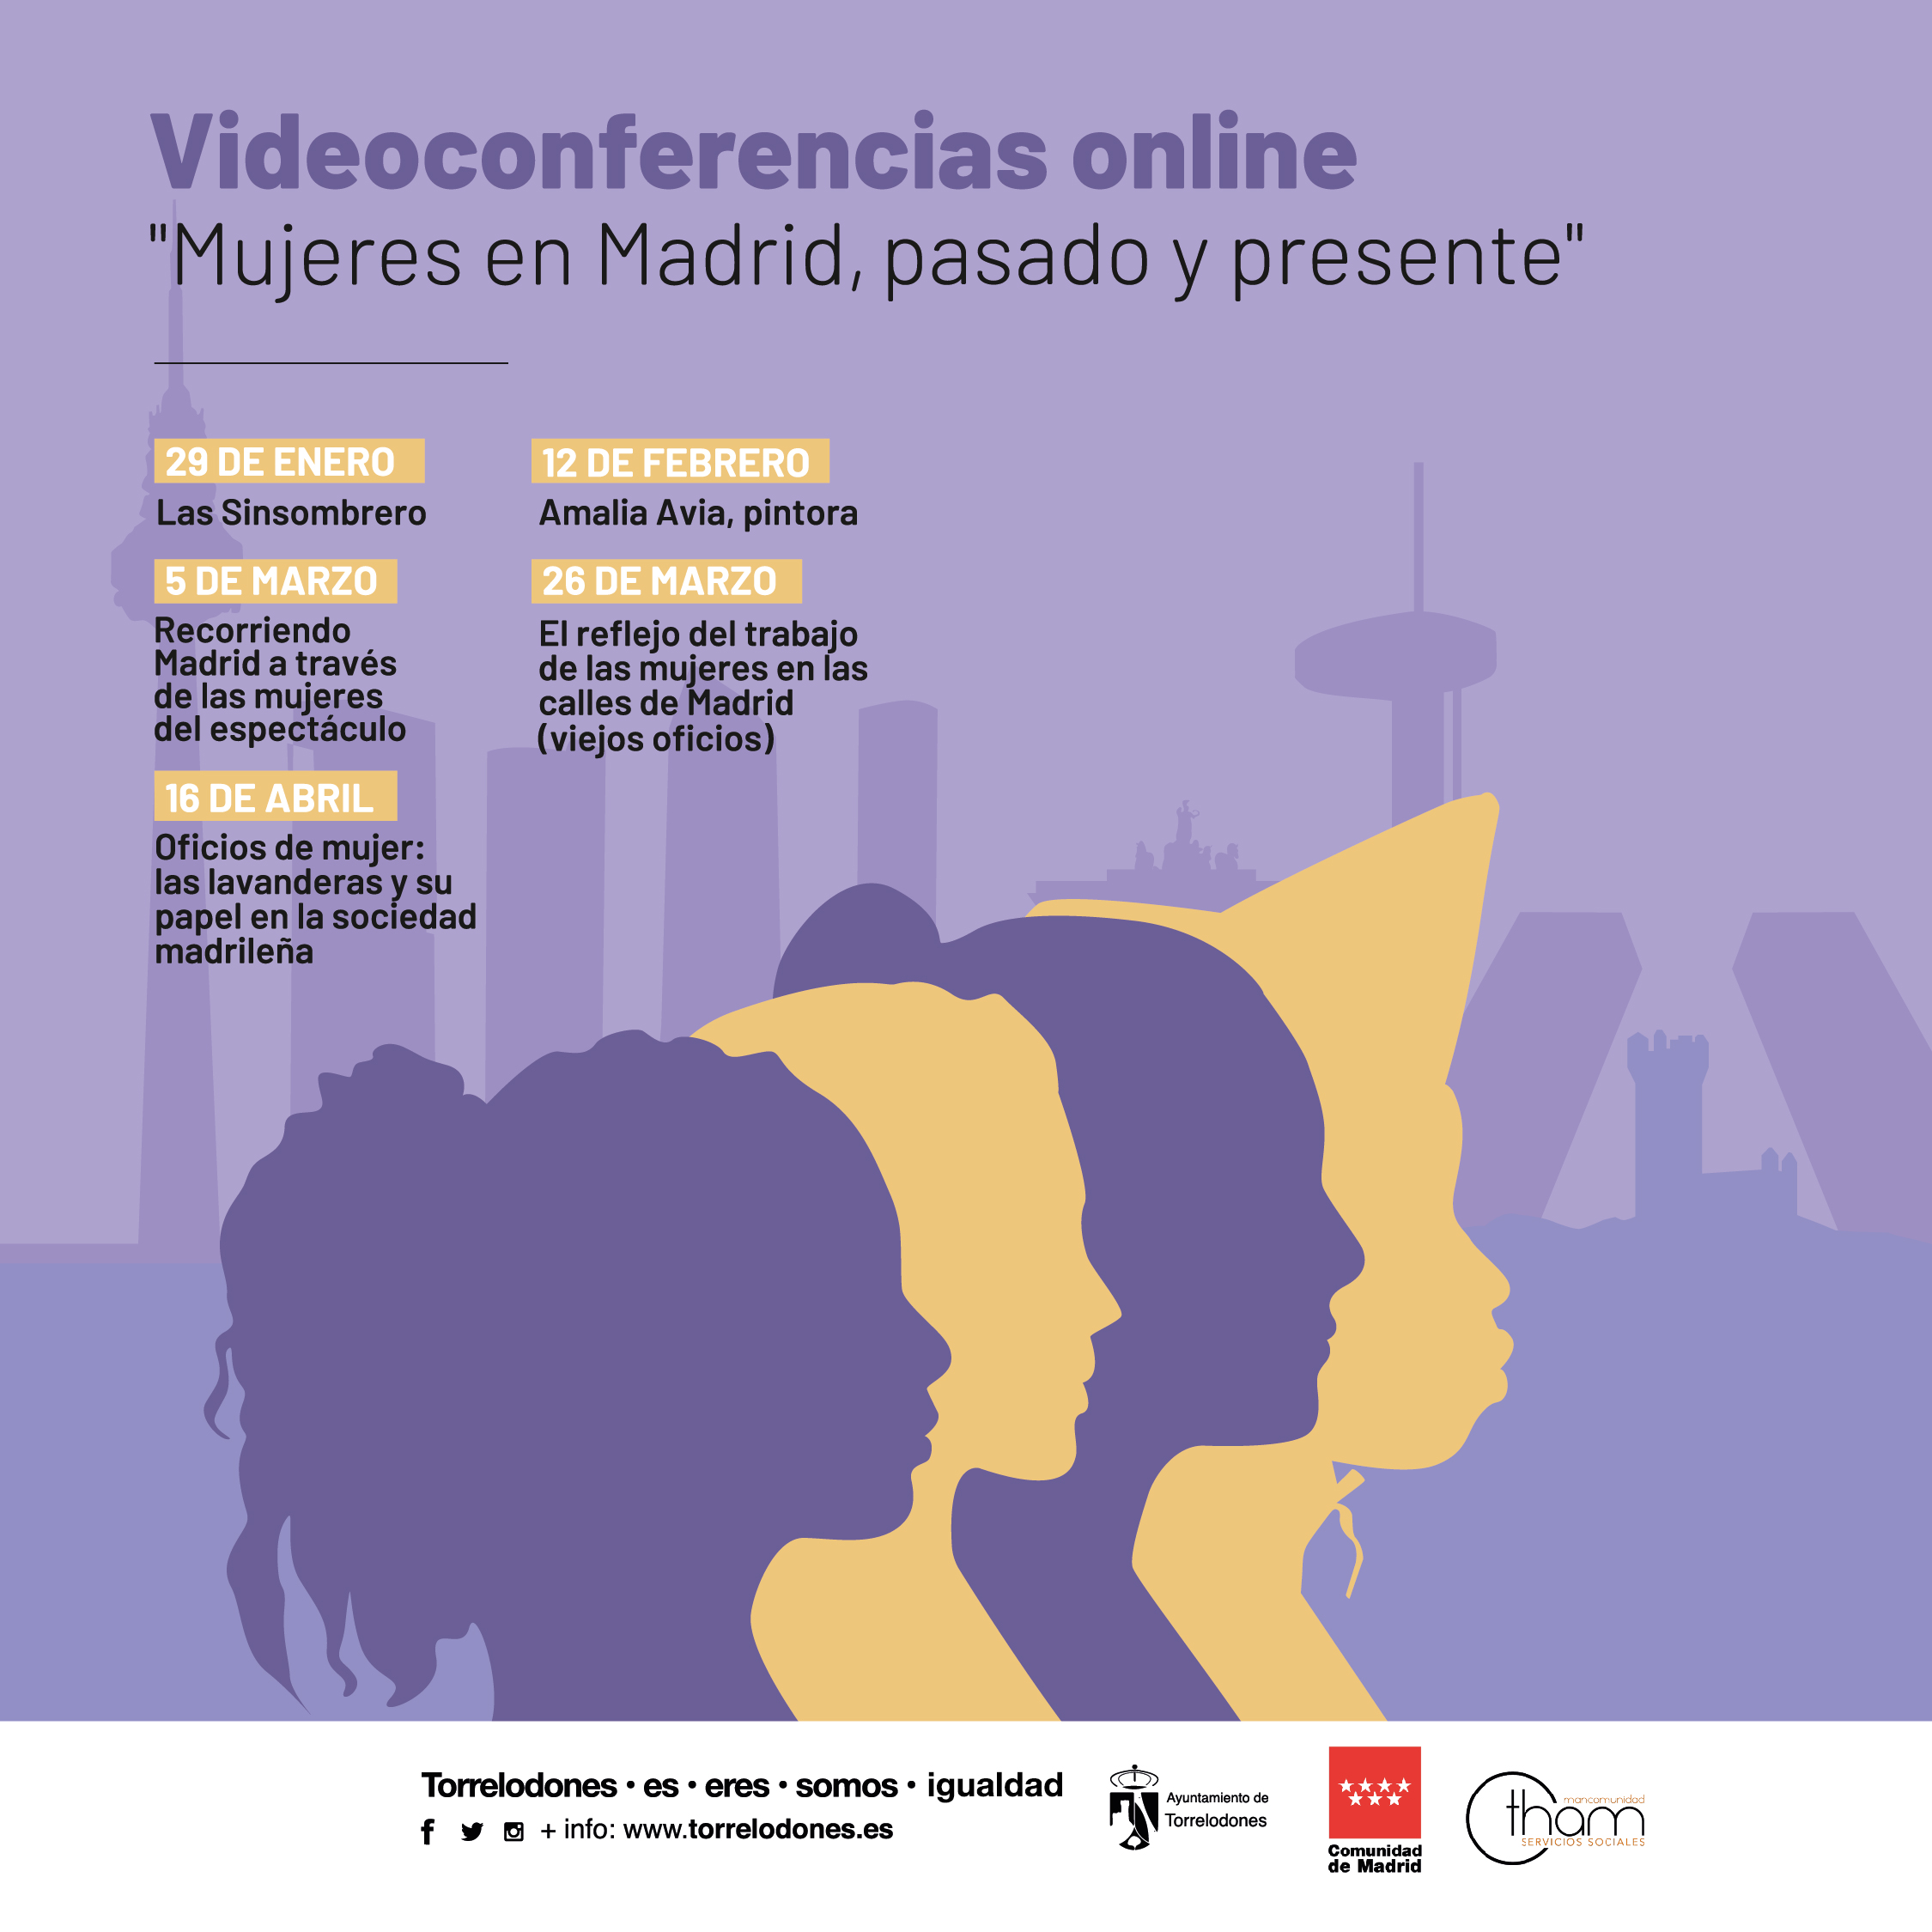 Videoconferencias online: “Mujeres en Madrid, pasado y presente”